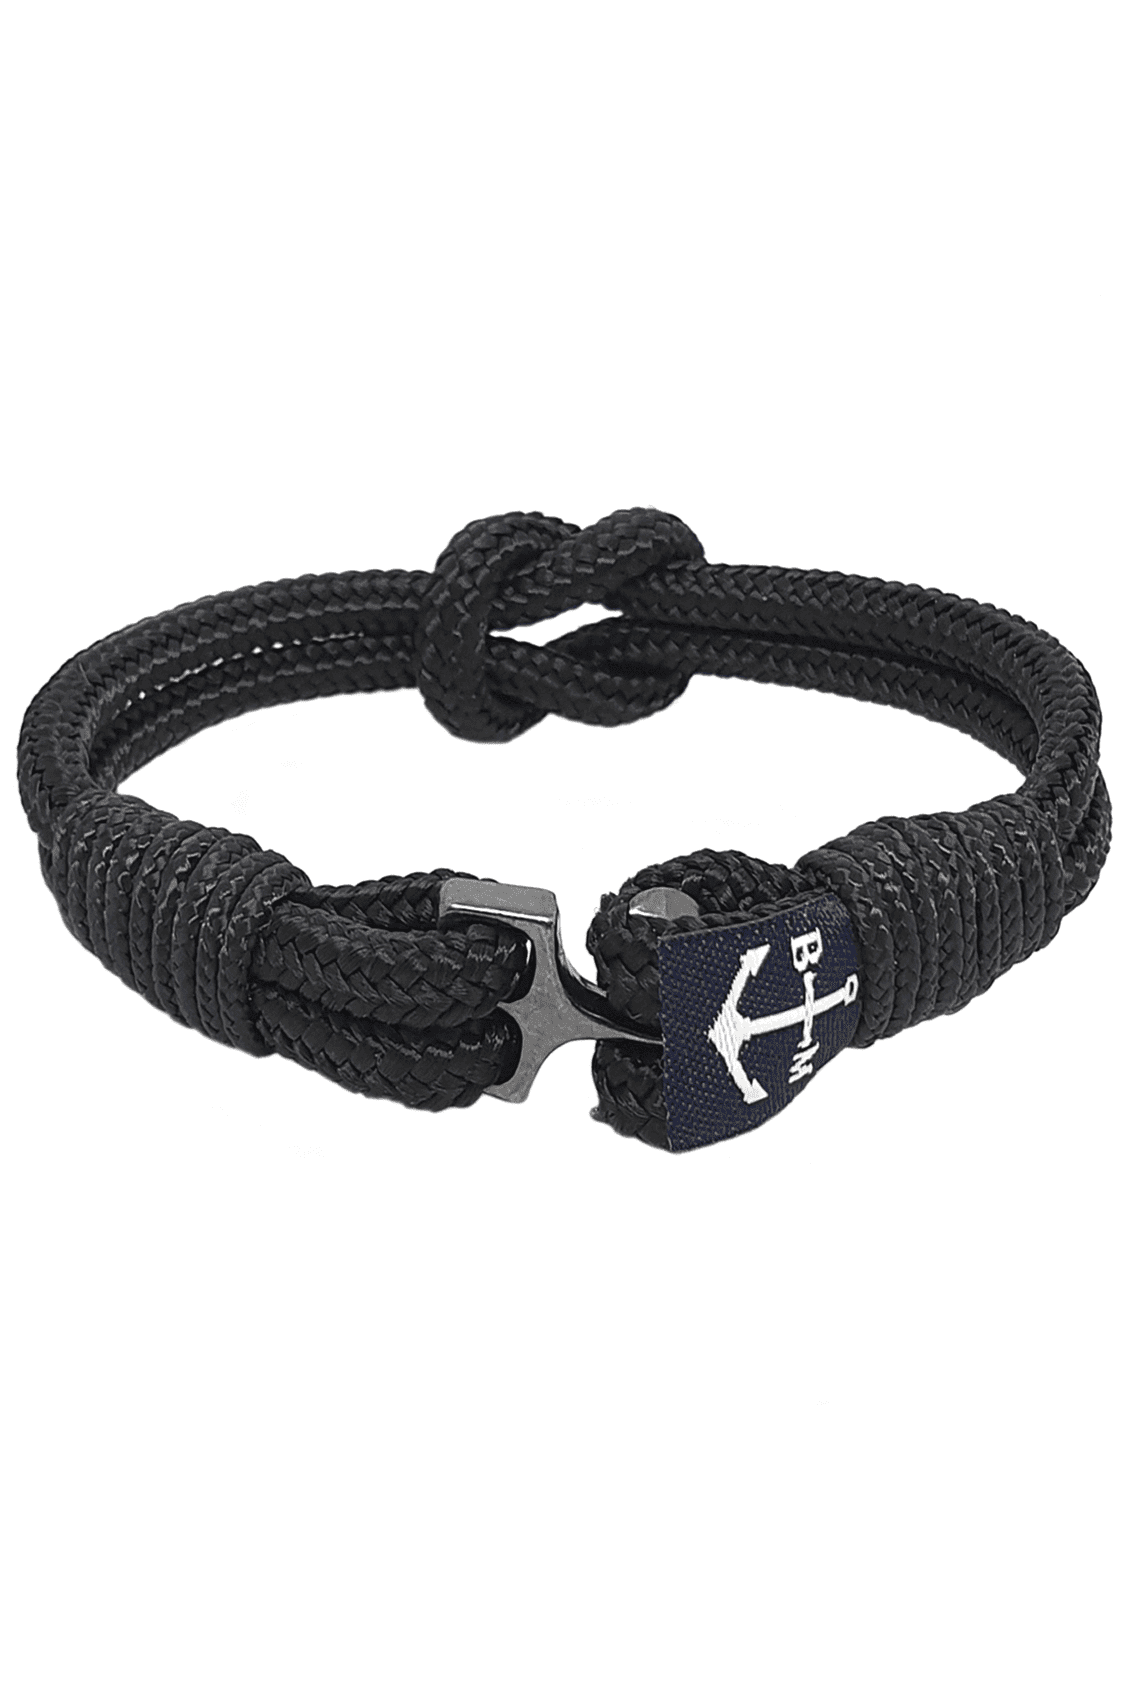 Nautical Grunge Black Bracelet - Jewelry by Bretta